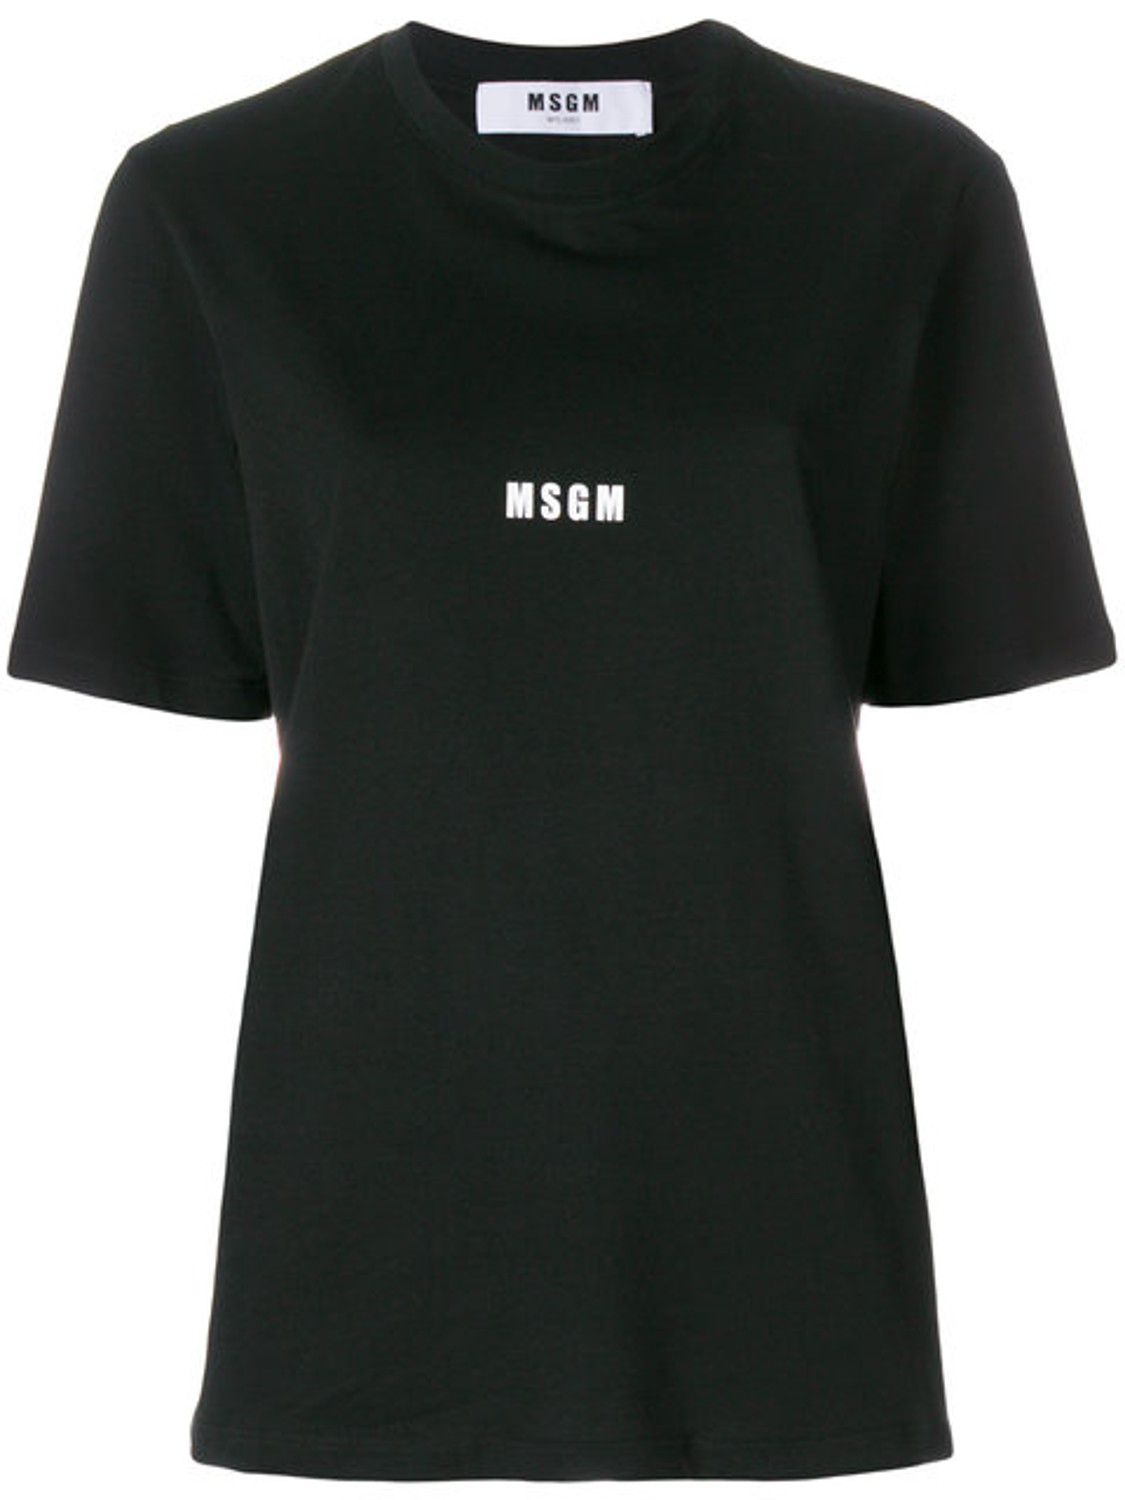 shop MSGM  T-shirts: T-shirt MSGM, manica corta, girocollo, logo piccolo sul davanti, oversize.

Composizione: 100% cotone. number 1255